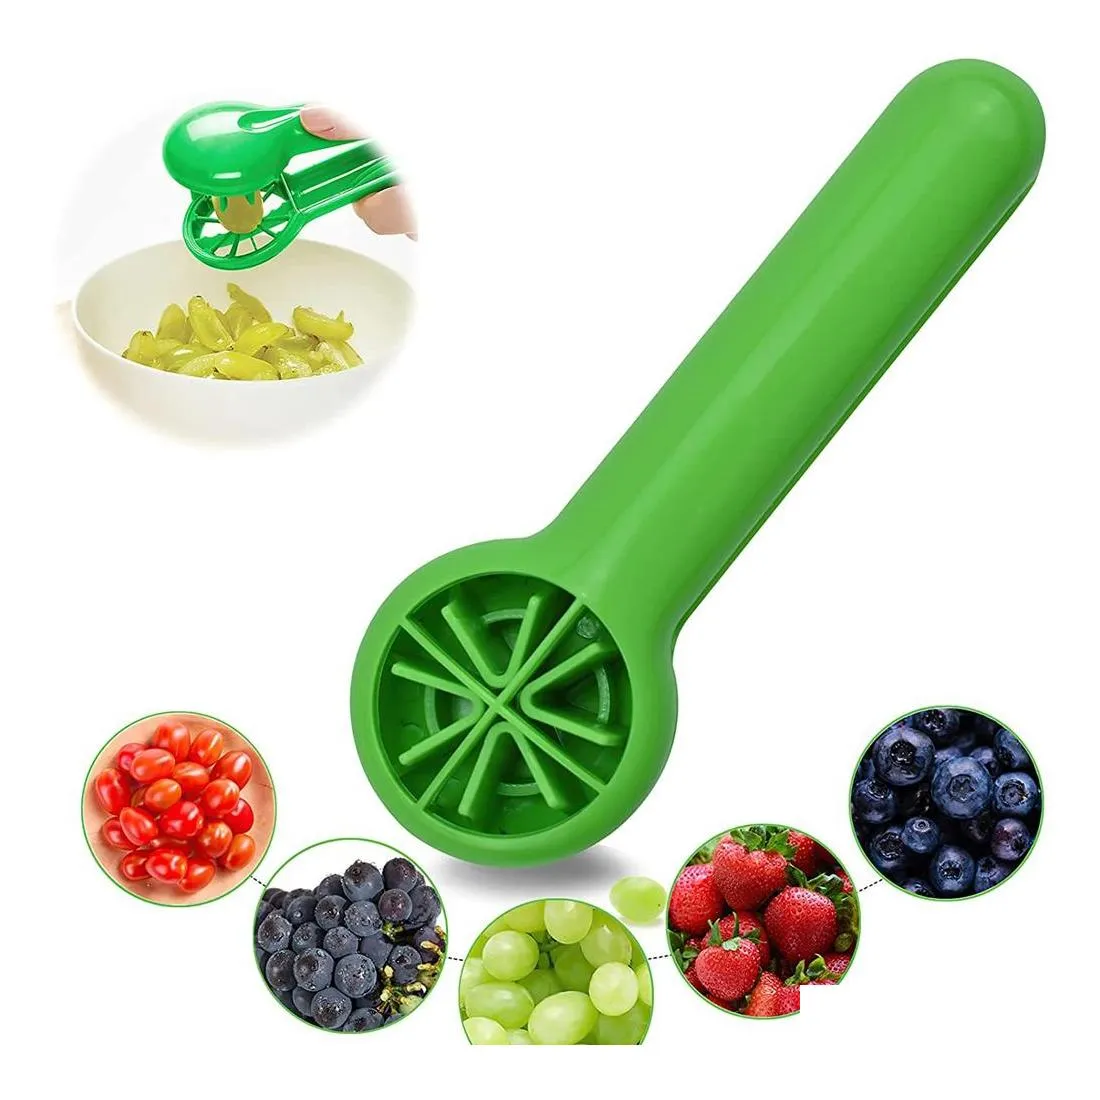 Ferramentas vegetais de frutas cortador de uva cortador para crianças bebês tomate cereja cozinha gadget sem sementes mtifuncional dispensar dhfot tly016